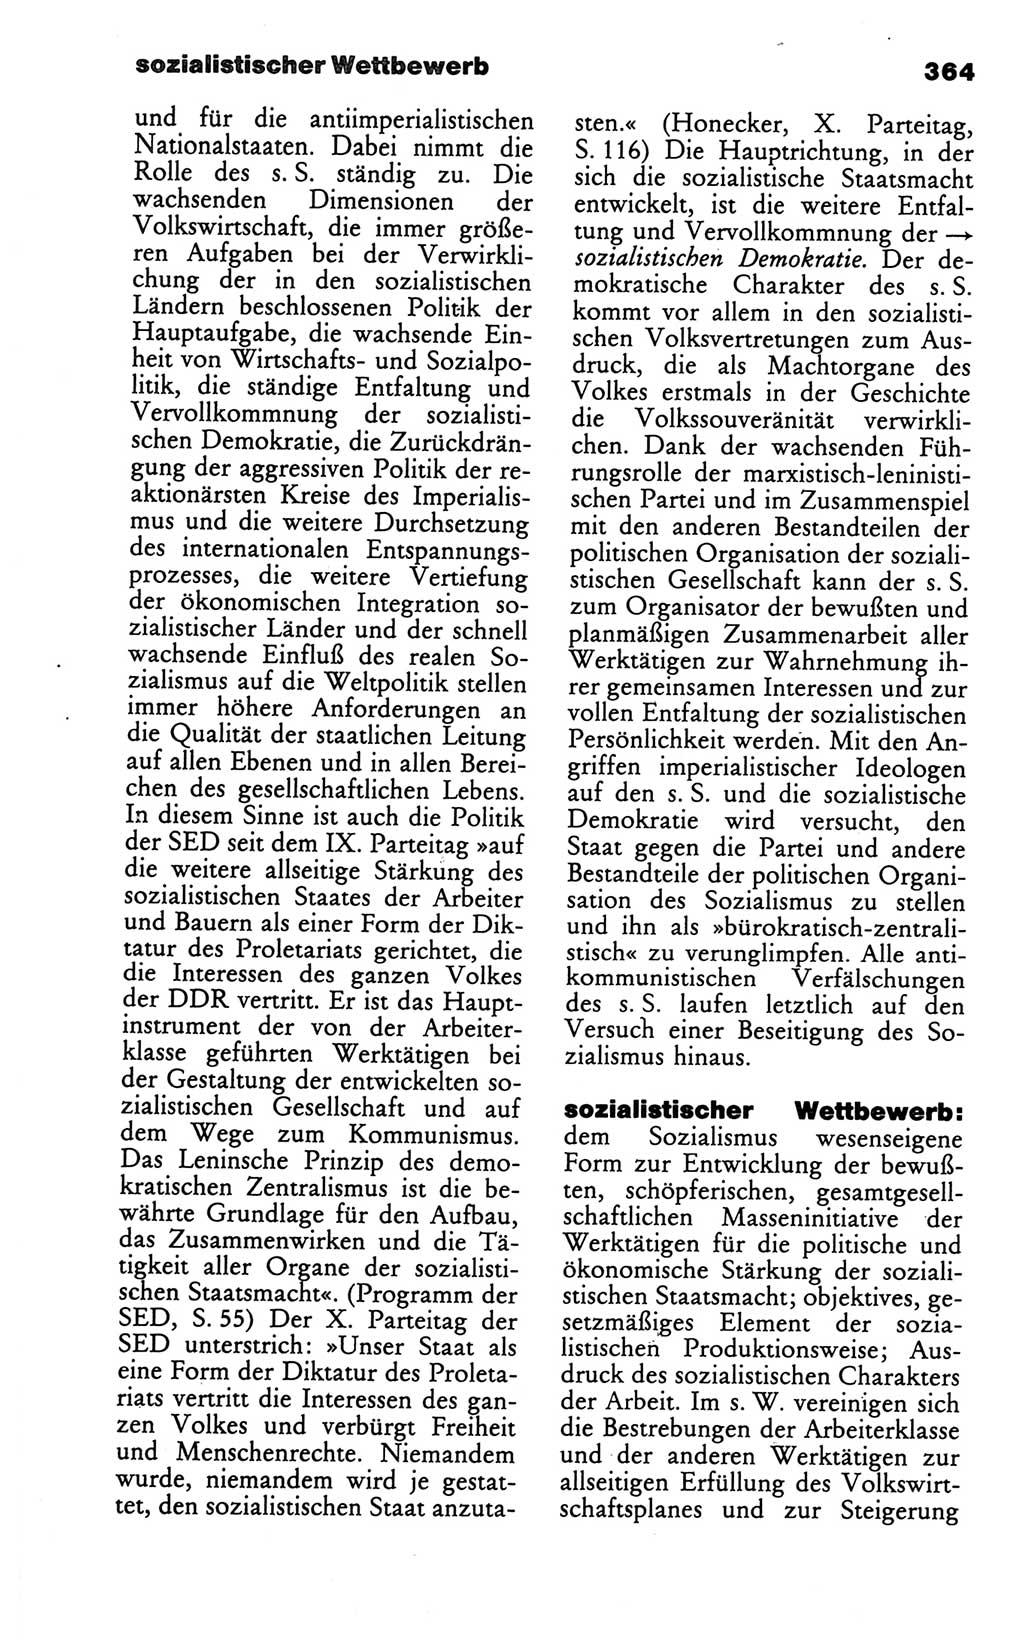 Wörterbuch des wissenschaftlichen Kommunismus [Deutsche Demokratische Republik (DDR)] 1986, Seite 364 (Wb. wiss. Komm. DDR 1986, S. 364)